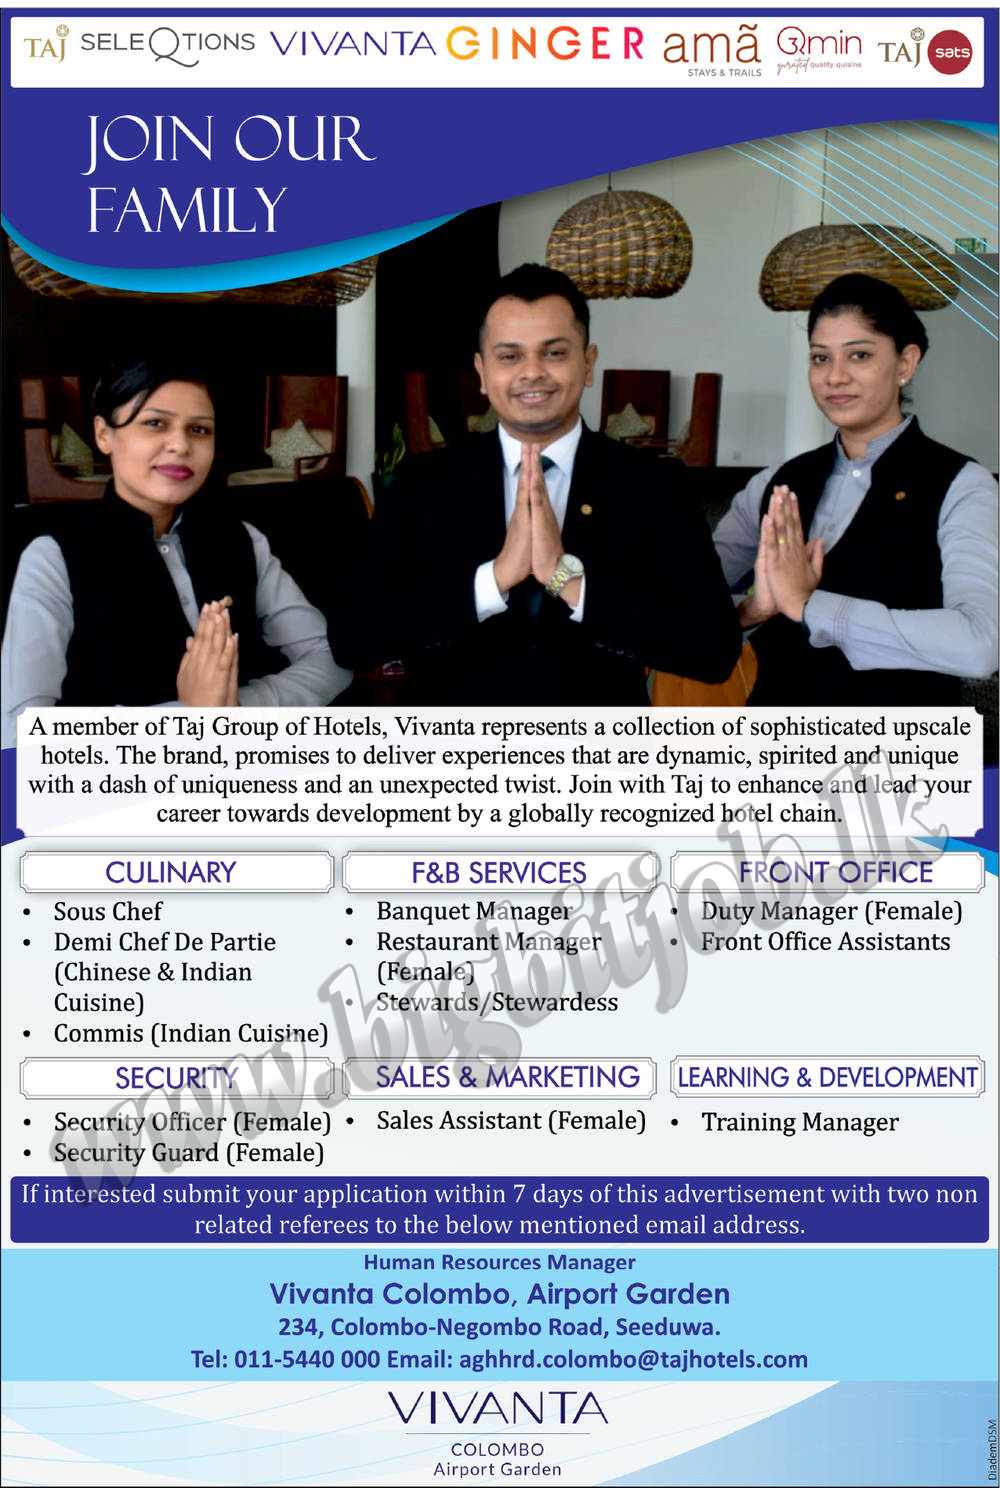 Vacancies in Vivanta Colombo - Airport Garden